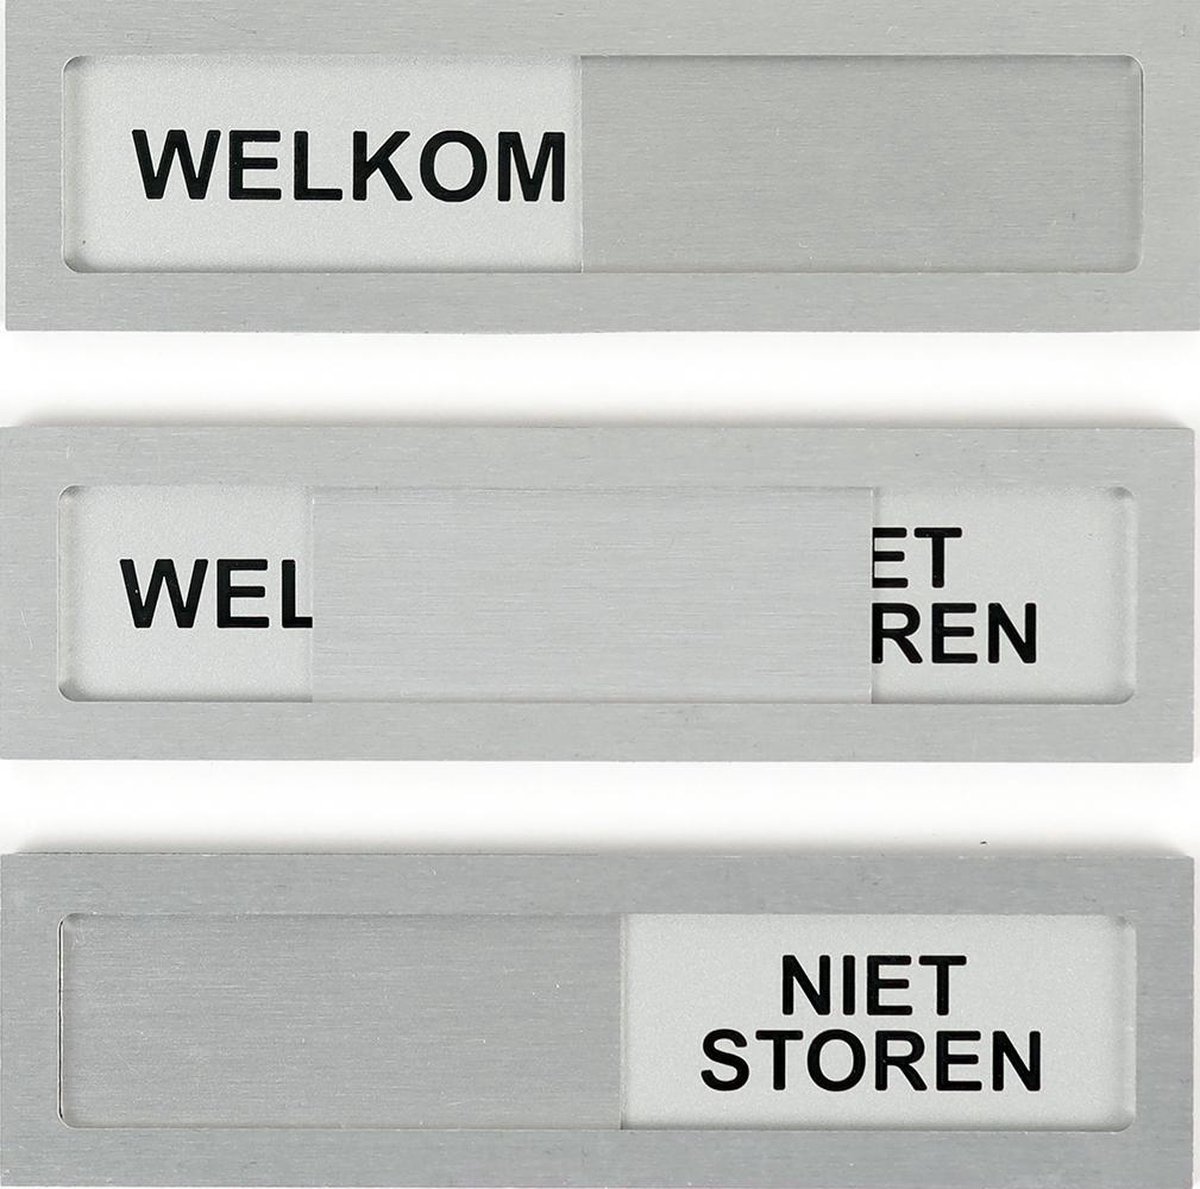 Schuifbordje Welkom Niet storen - Grijs Zwart Aluminium - 10 cm x 2,8 cm x 0,4 cm - Bevestiging 3M plakstrip -Promessa-Design.